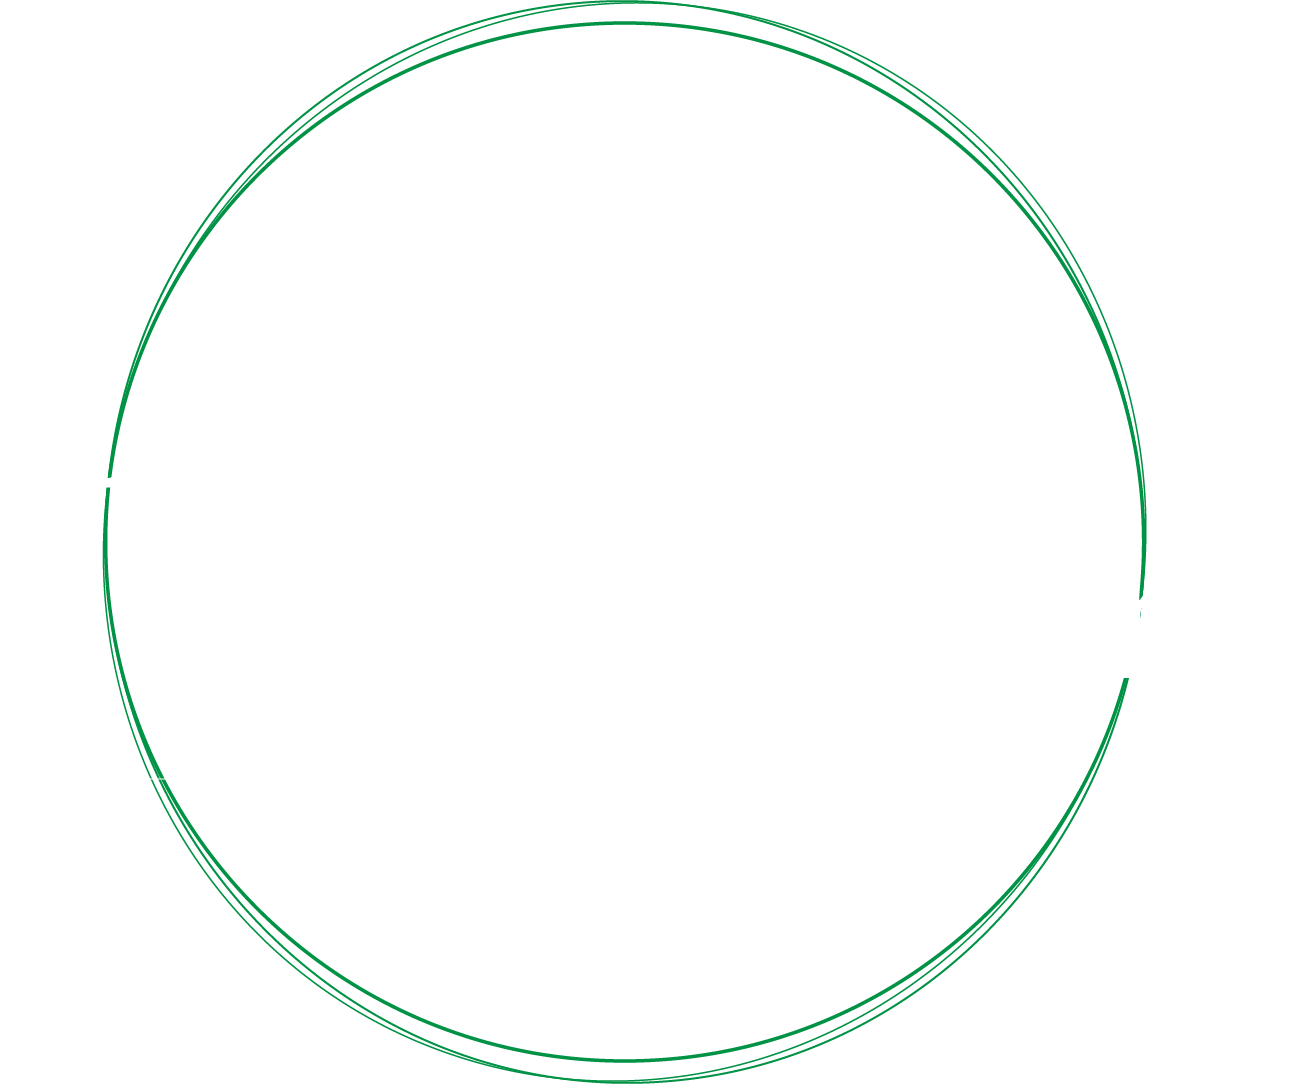 Link to the Future. 限りある資源を「未来」へつなぐ。人と環境にやさしい、「道づくり」のために。